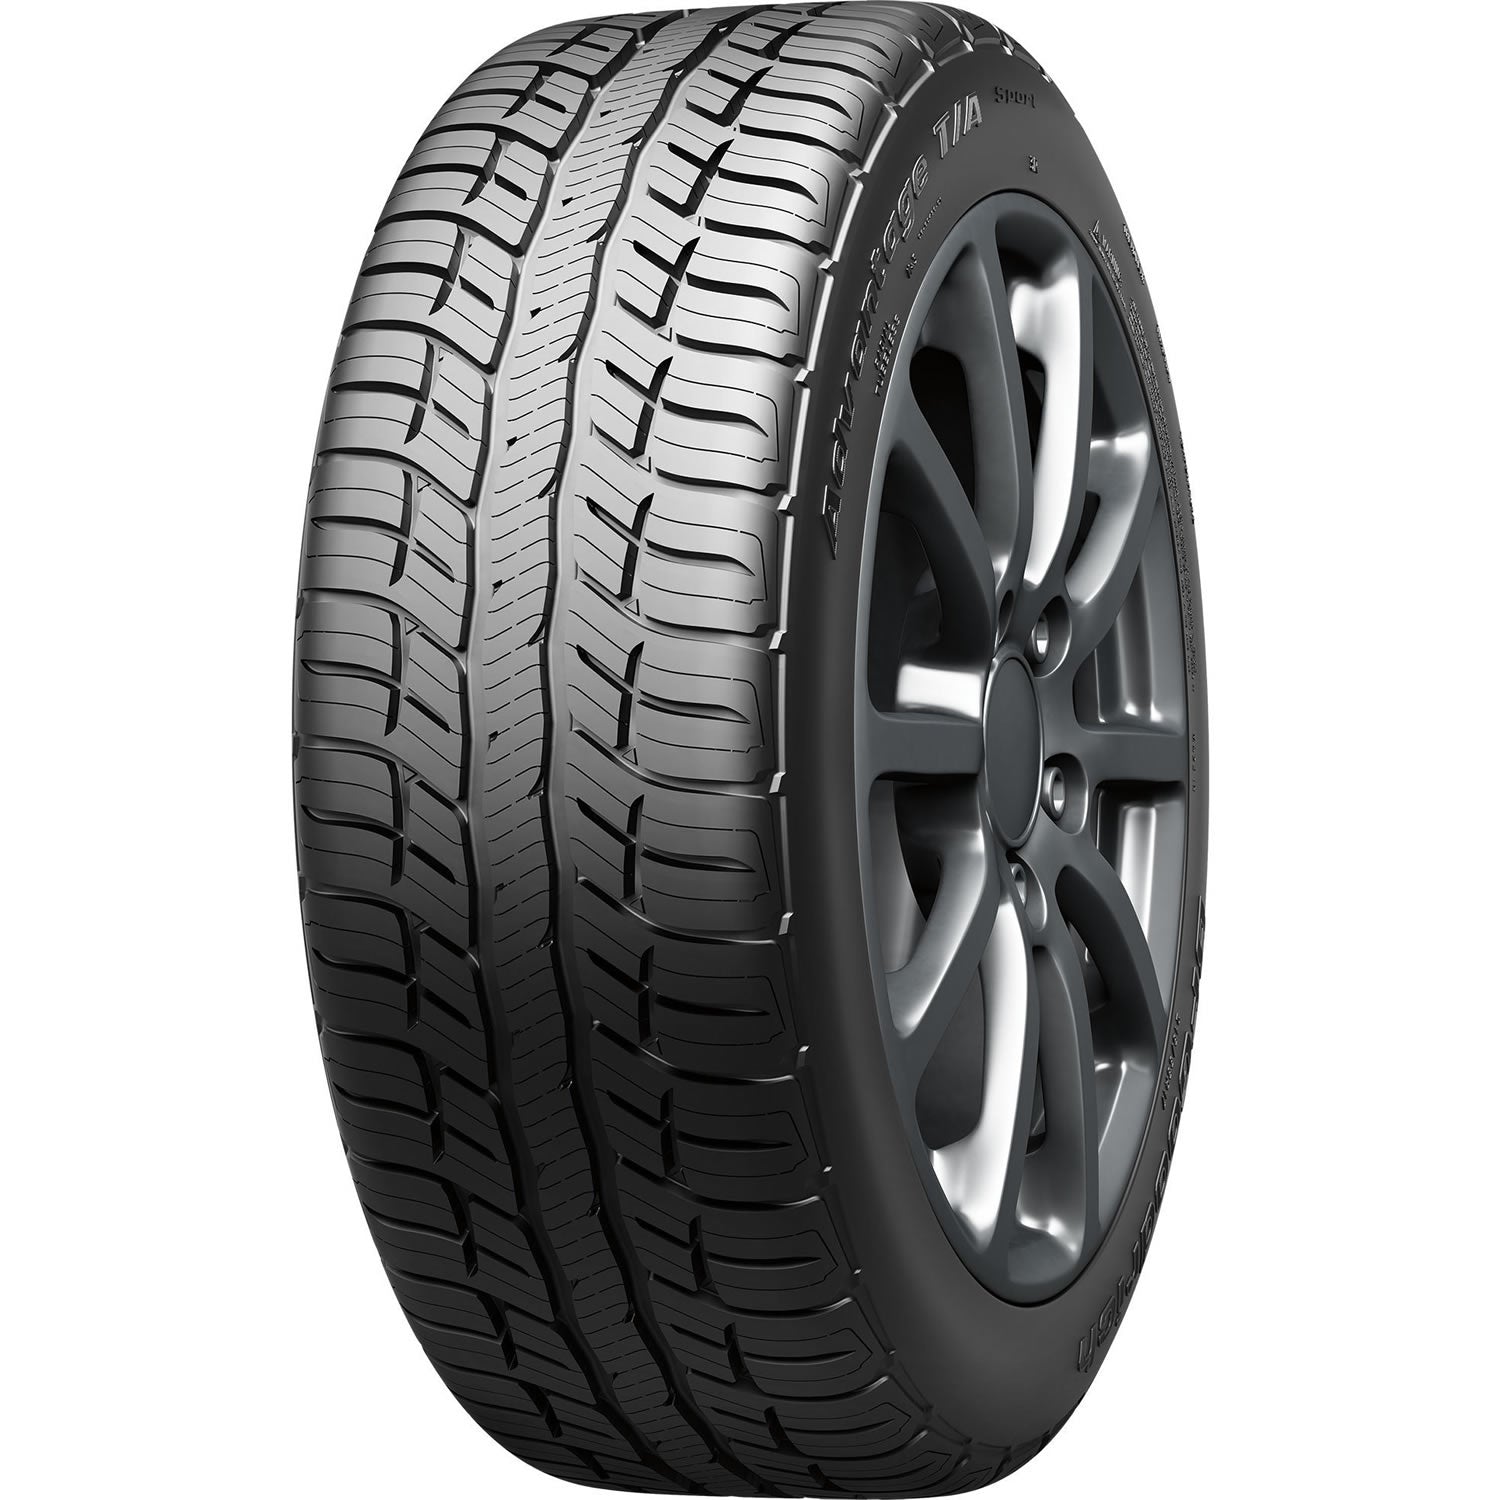 BFGOODRICH ADVANTAGE T/A SPORT 285/45R22XL (32.1X11.2R 22) Tires